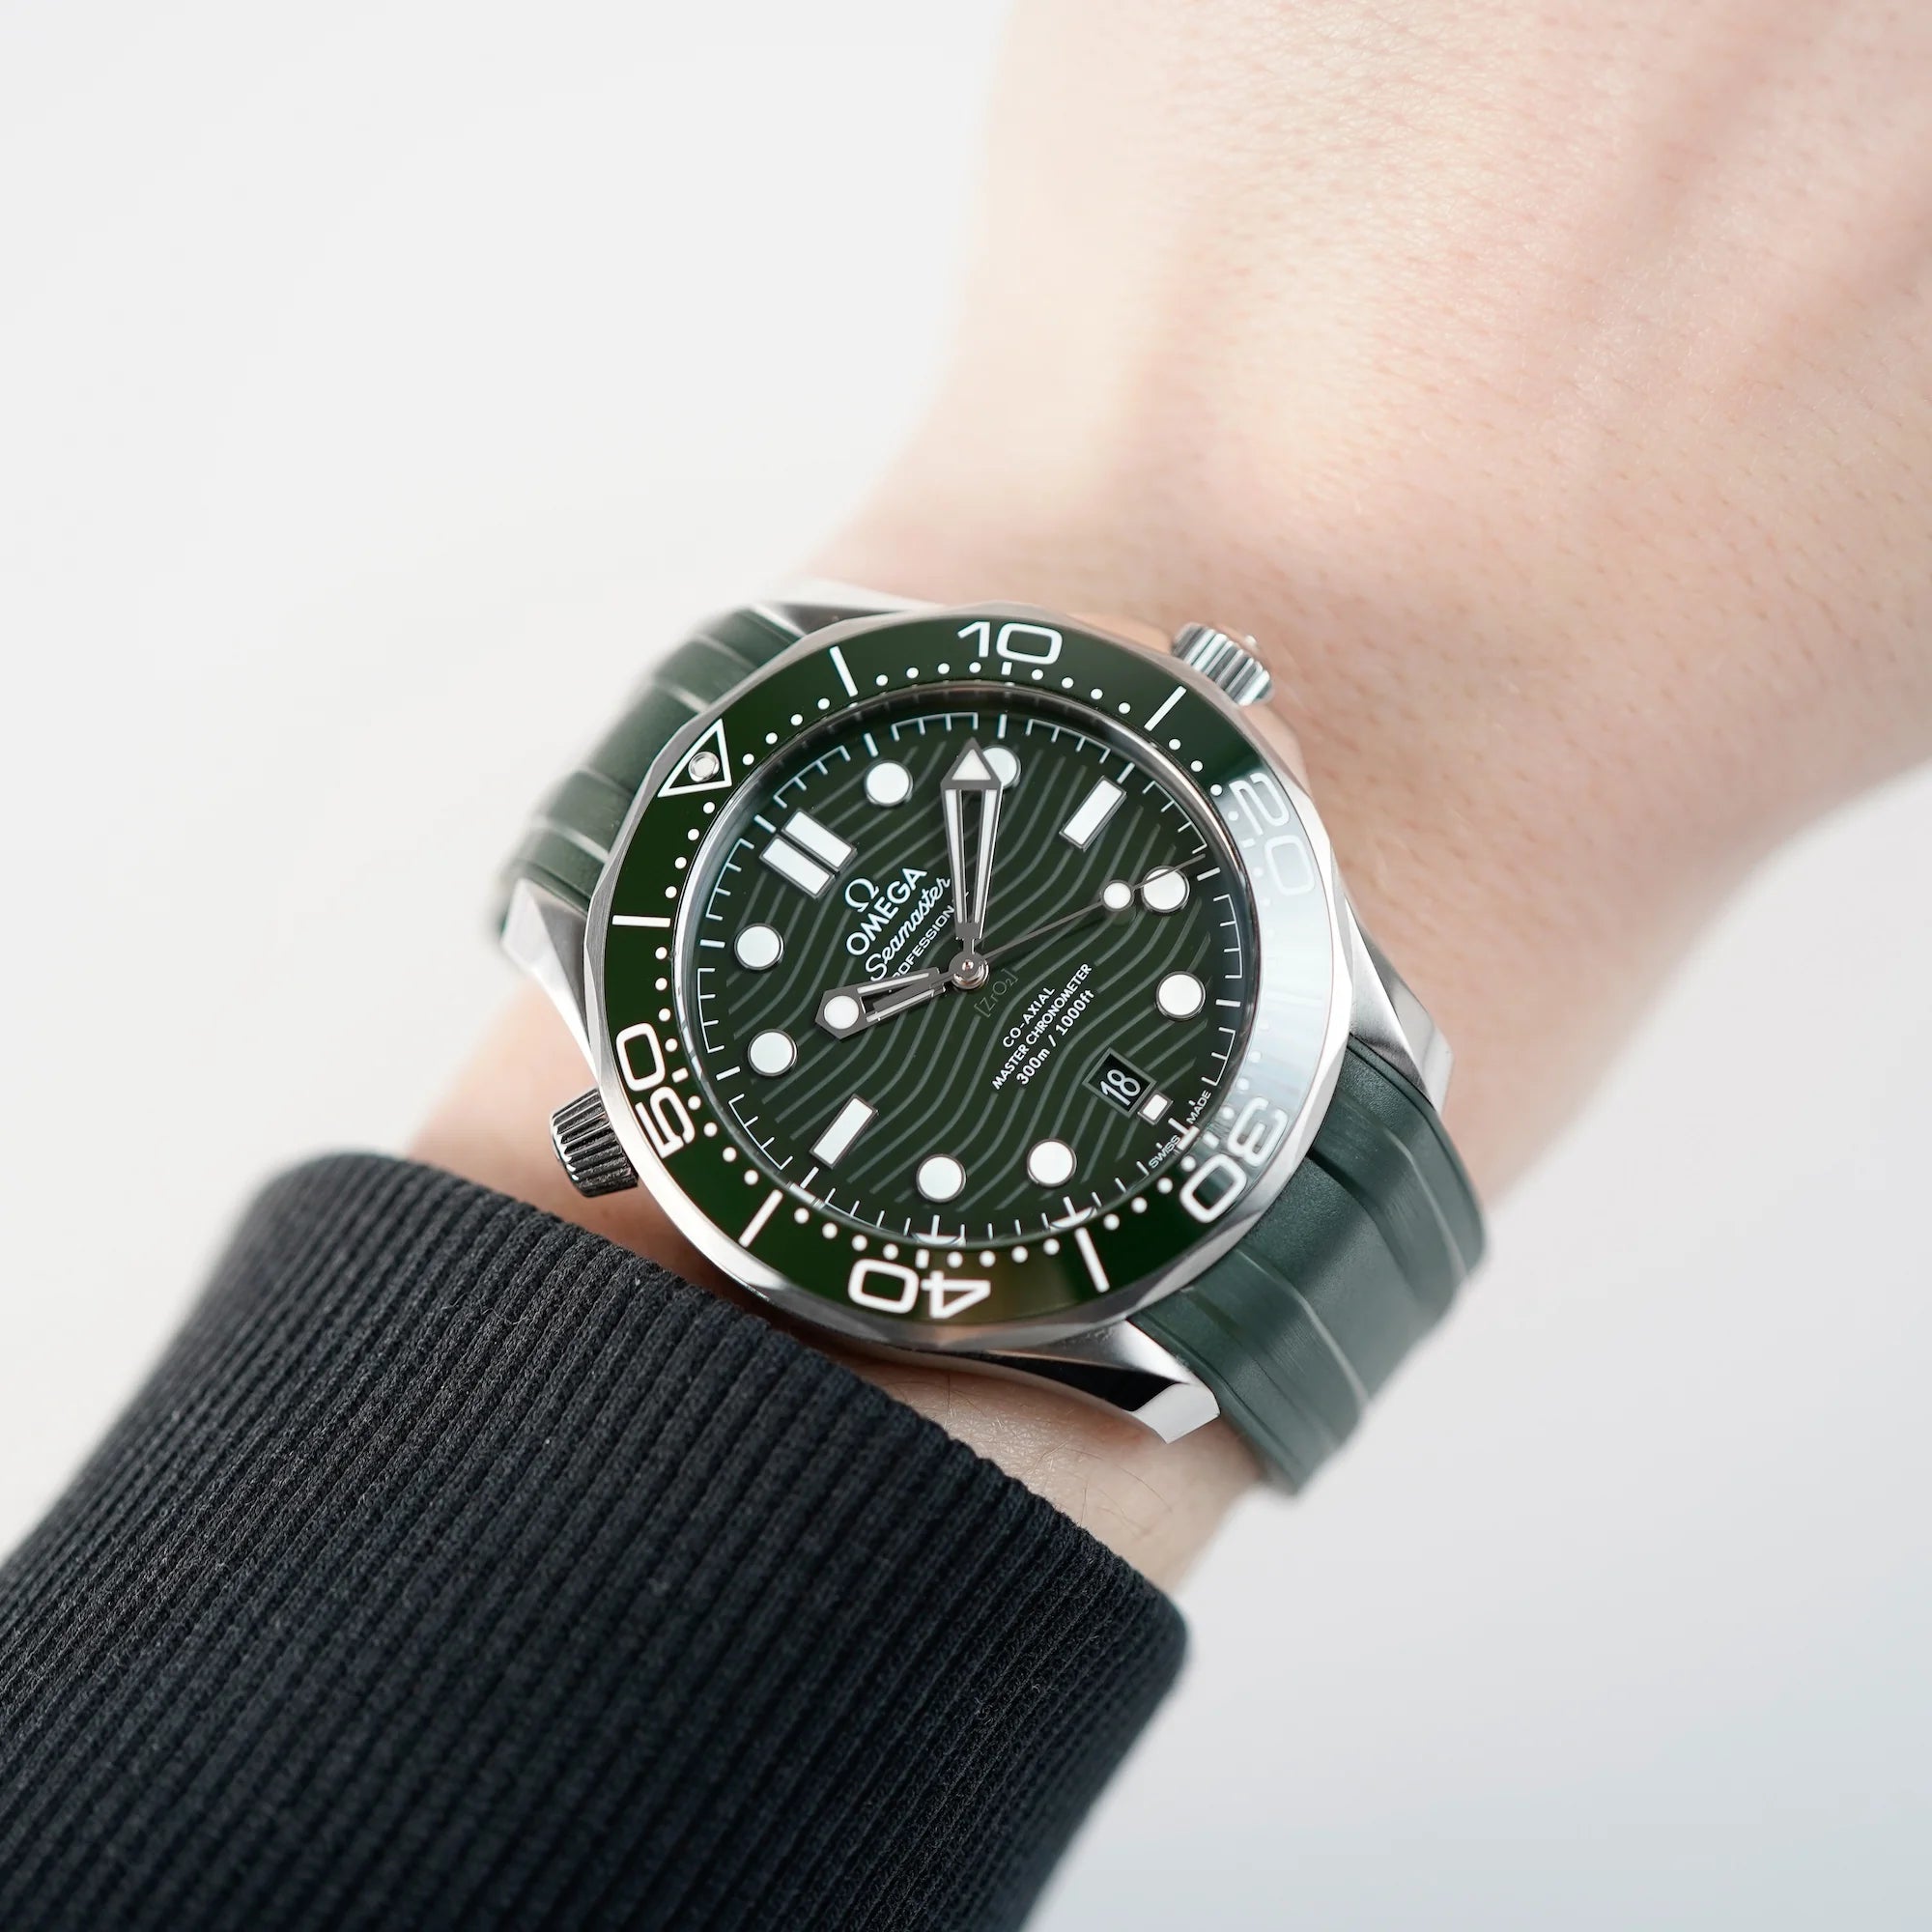 Mann trägt die Omega Seamaster Professional Diver 300m mit olivgrünem Zifferblatt für einen Wristshot am Handgelenk